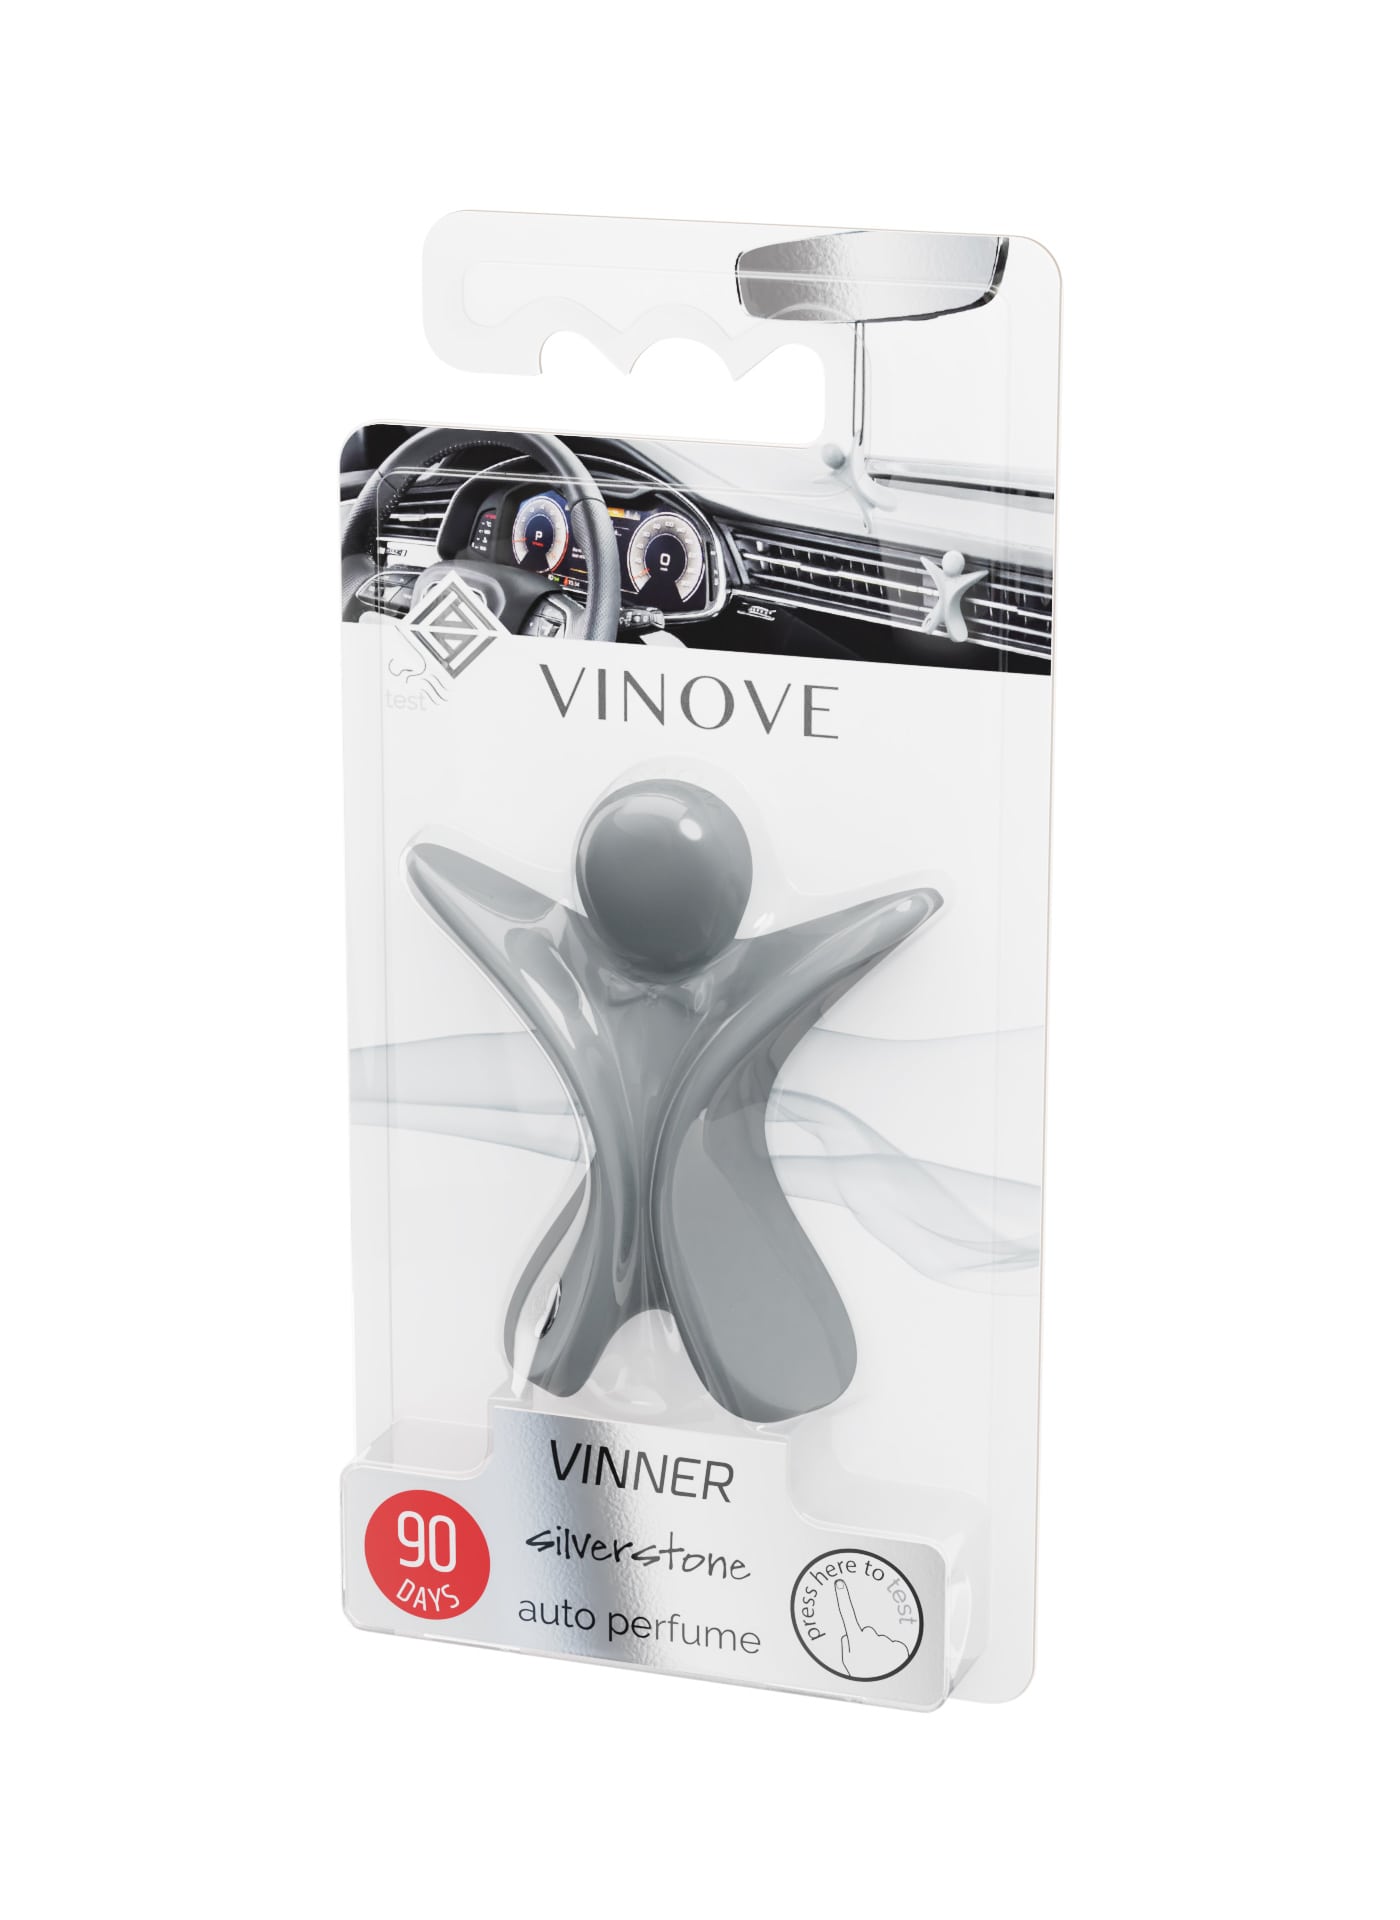 VINOVE-VINNER-silverstone